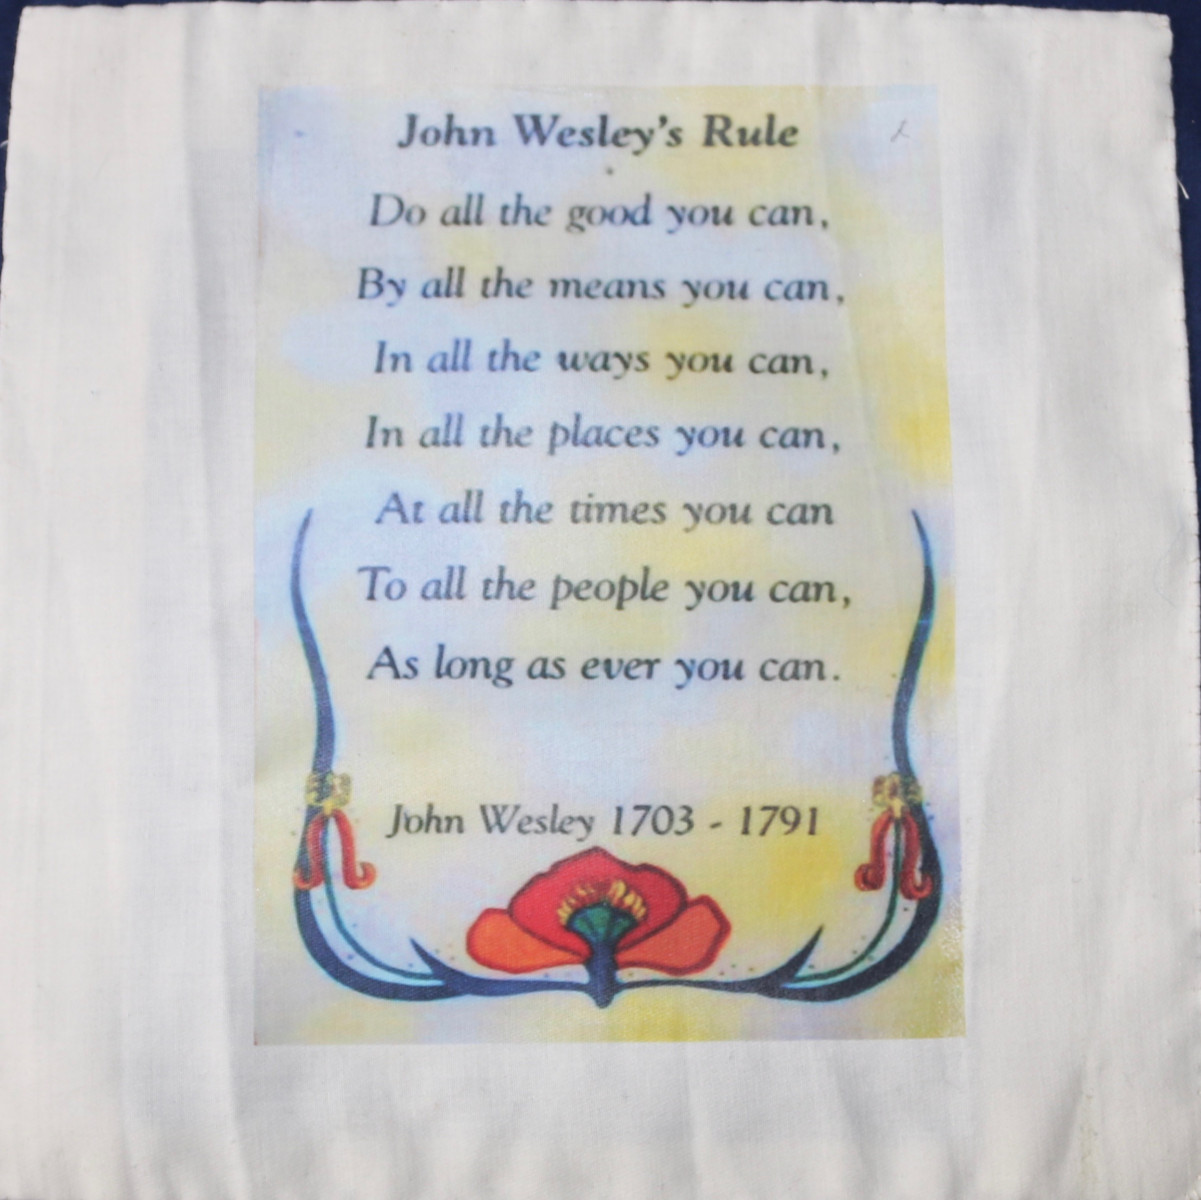 Words of John Wesley's Rule